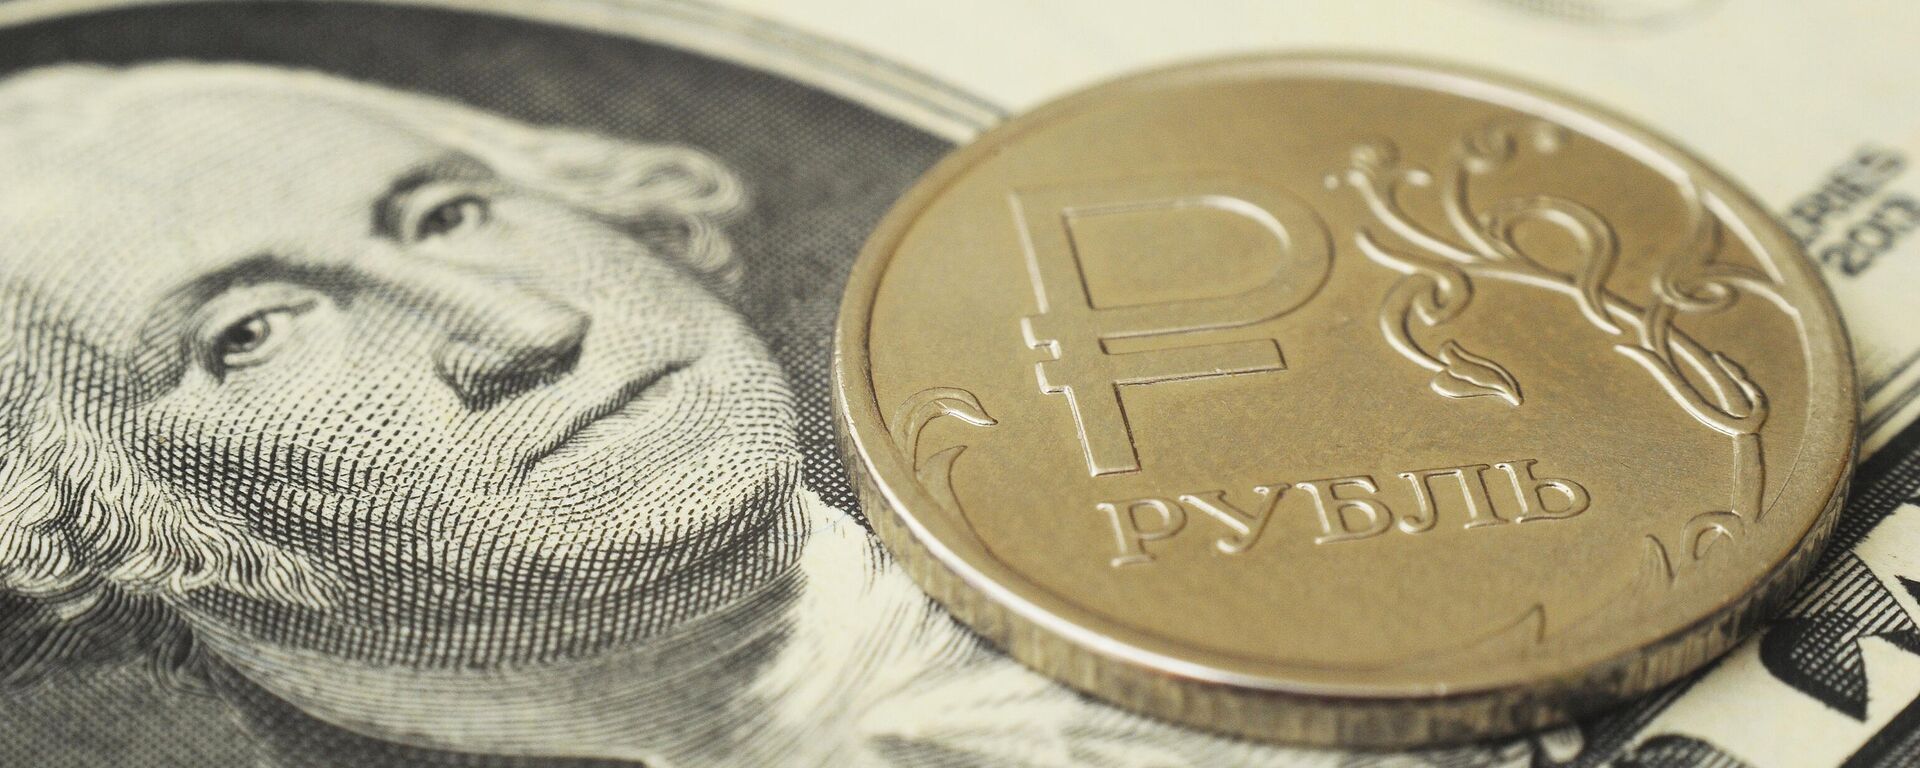 Монета номиналом один рубль на банкноте один доллар США. - Sputnik Абхазия, 1920, 22.06.2022